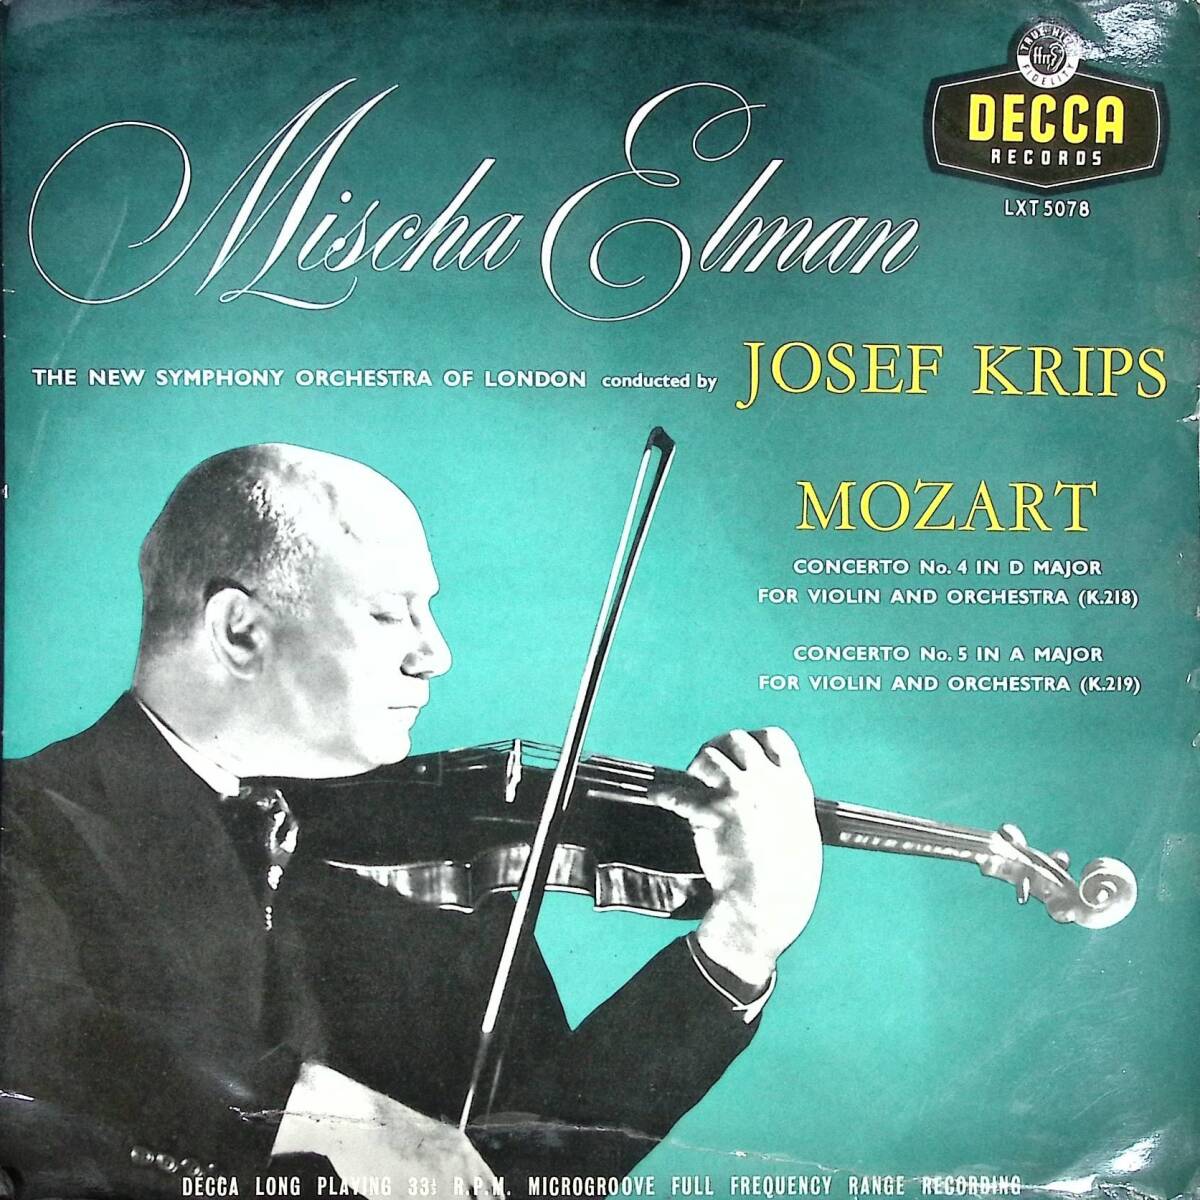 【貴重】名手エルマン モーツアルト ヴァイオリン協奏曲第4番K218 第5番K219 英Decca 初期オレンジ金ラベルフラット盤 LXT5078